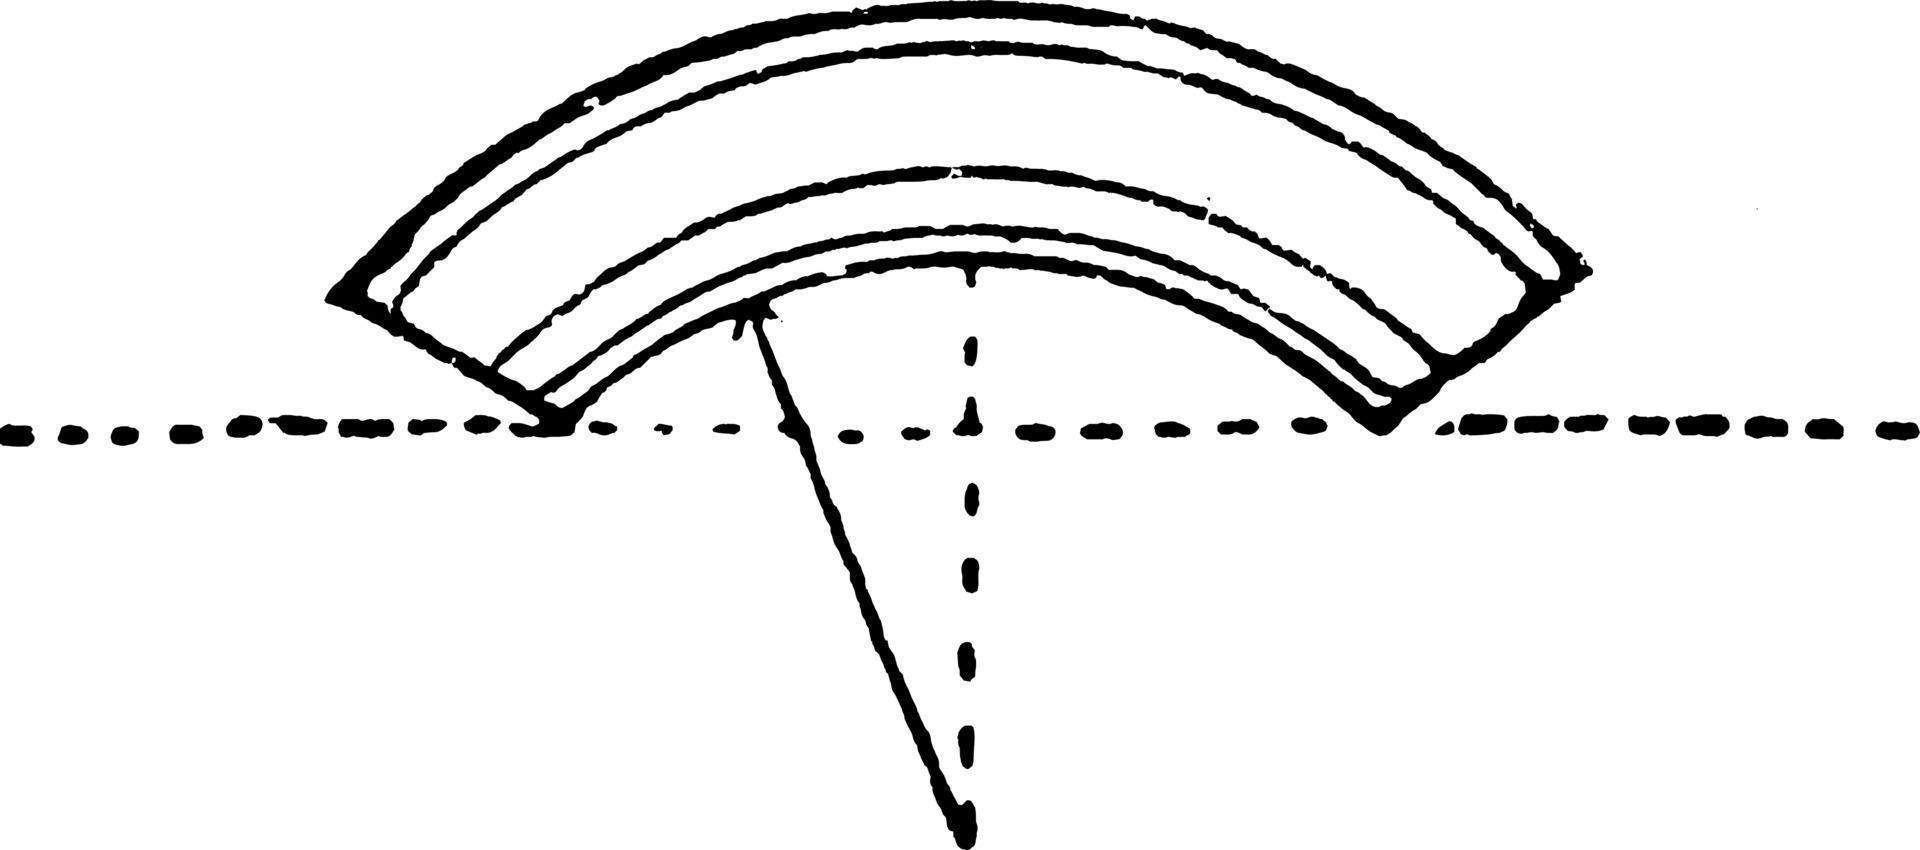 arco segmentario, arquitectura, grabado antiguo. vector